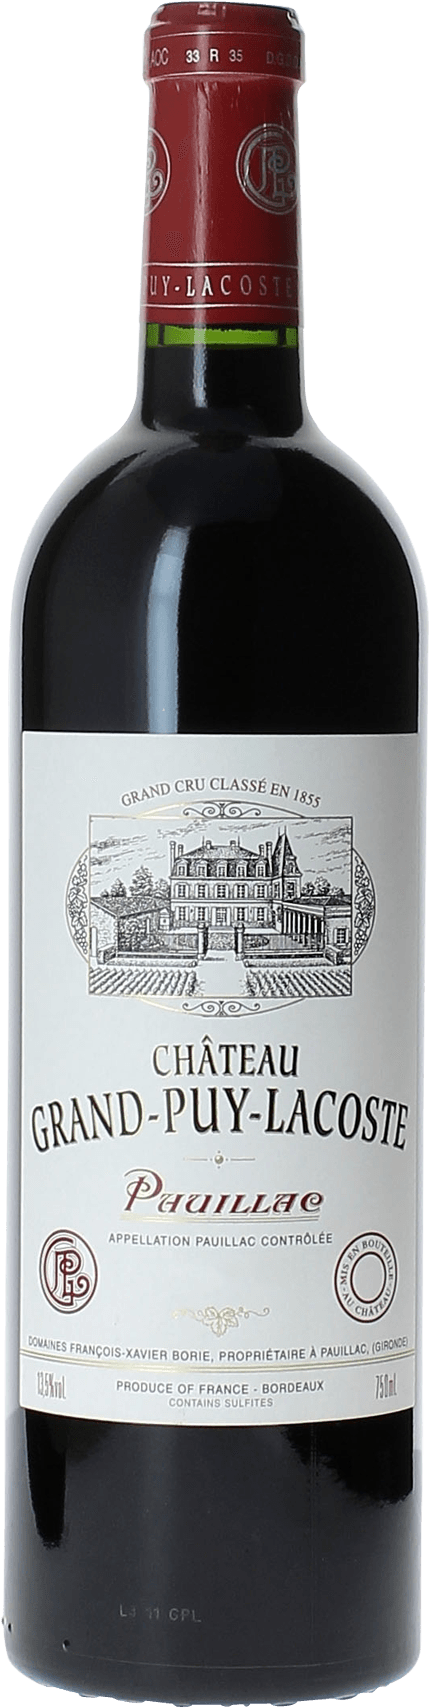 Grand puy lacoste 2015 5 me Grand cru class Pauillac, Bordeaux rouge